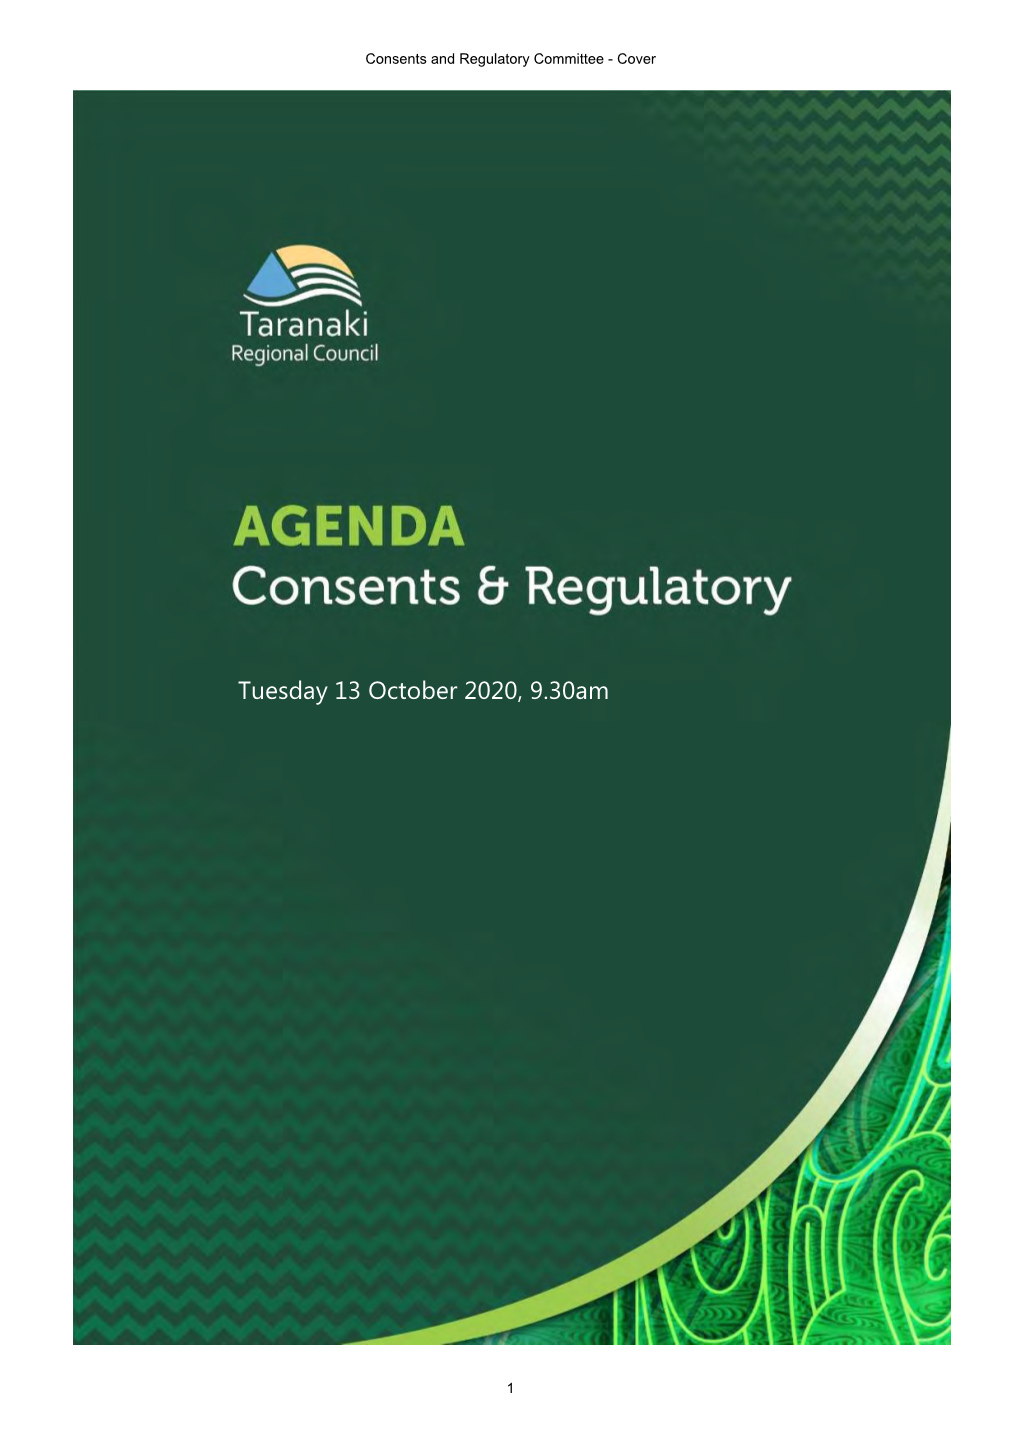 Consents & Regulatory Committee Agenda October 2020